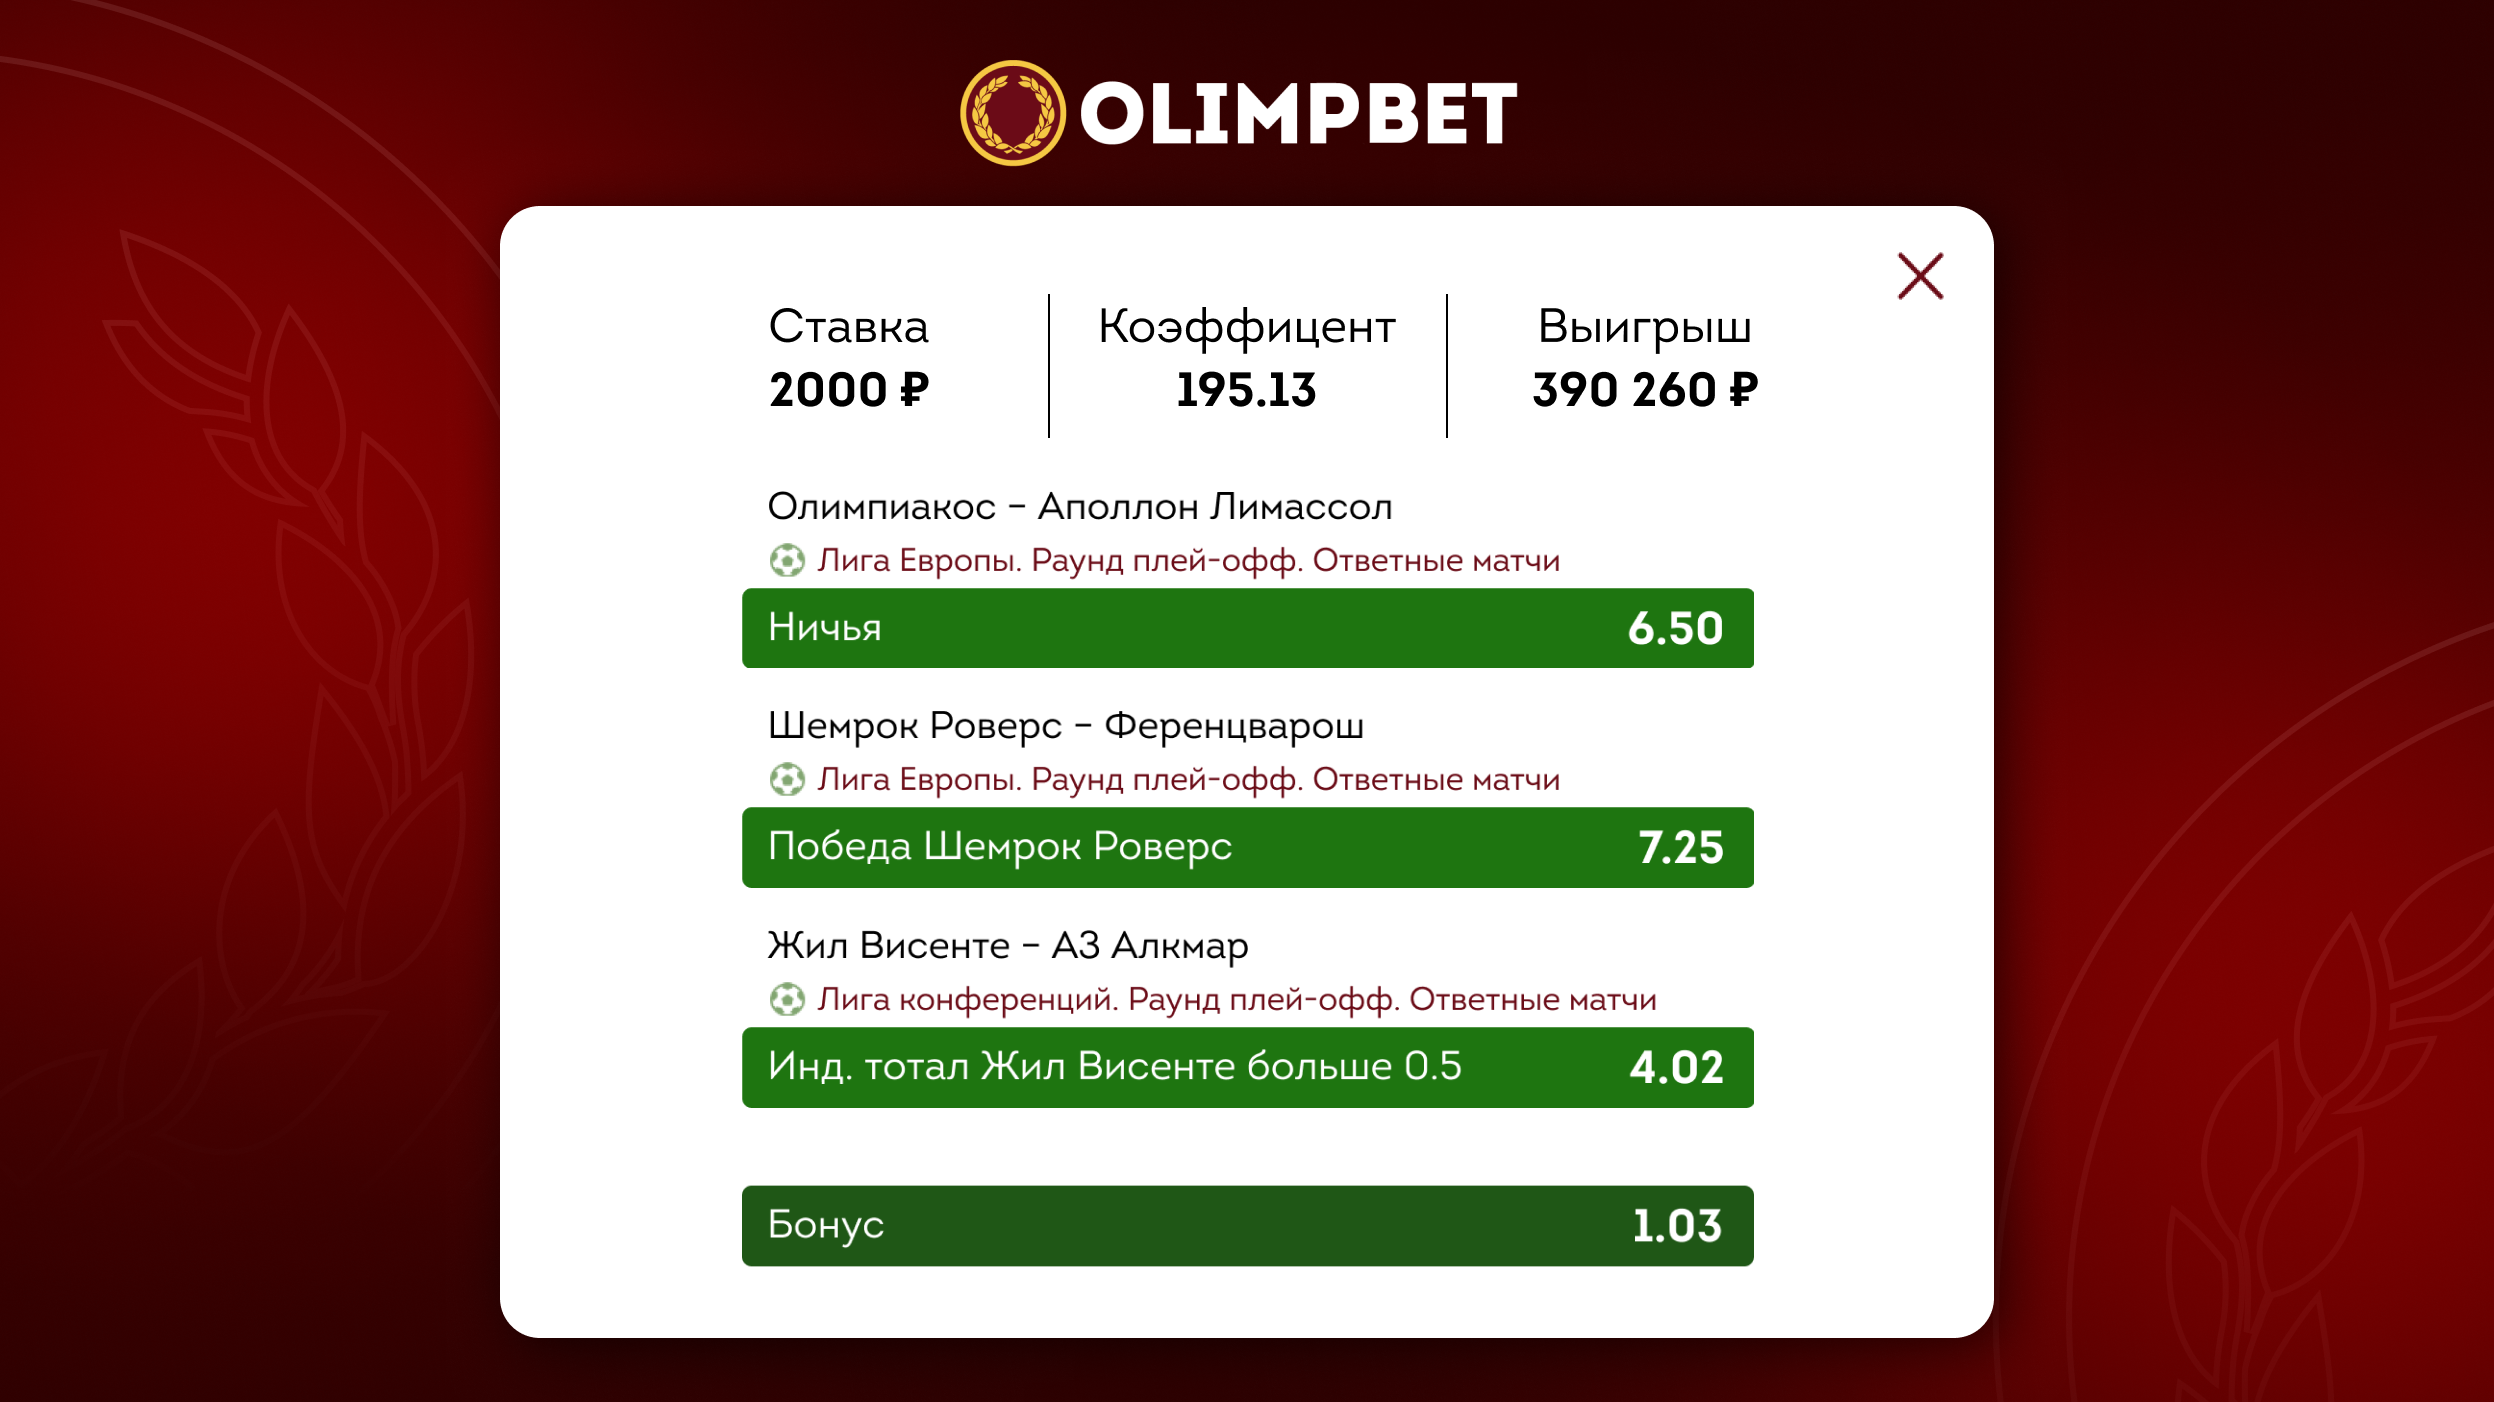 Клиент Olimpbet выиграл почти 400 тысяч рублей на матчах Лиги Европы и Лиги конференций